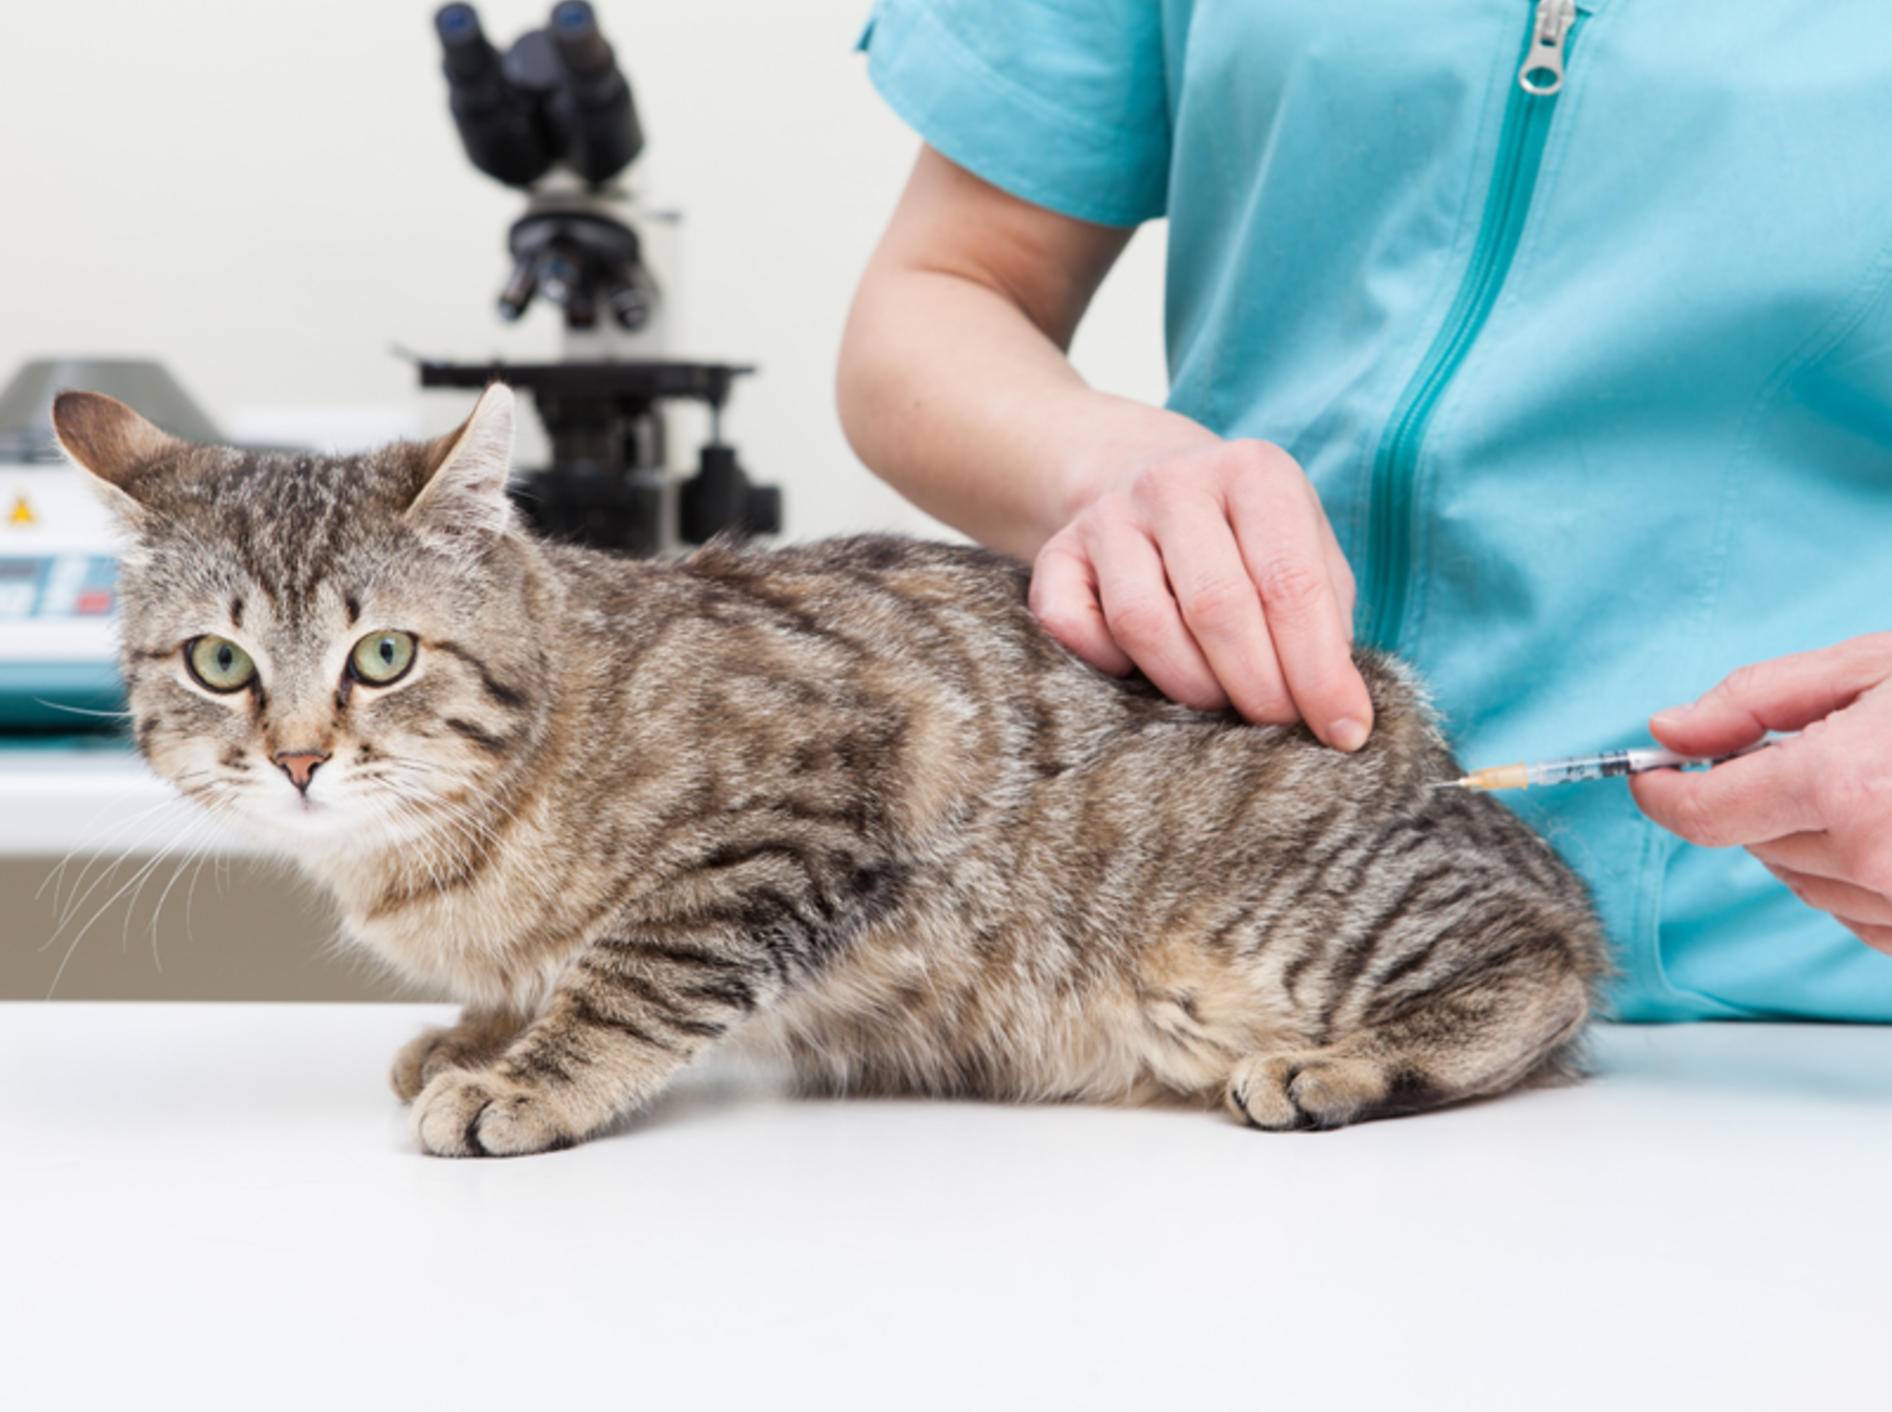 Die Behandlung von Katzenpilz sollte möglichst schnell erfolgen – Bild: Shutterstock / sematadesign